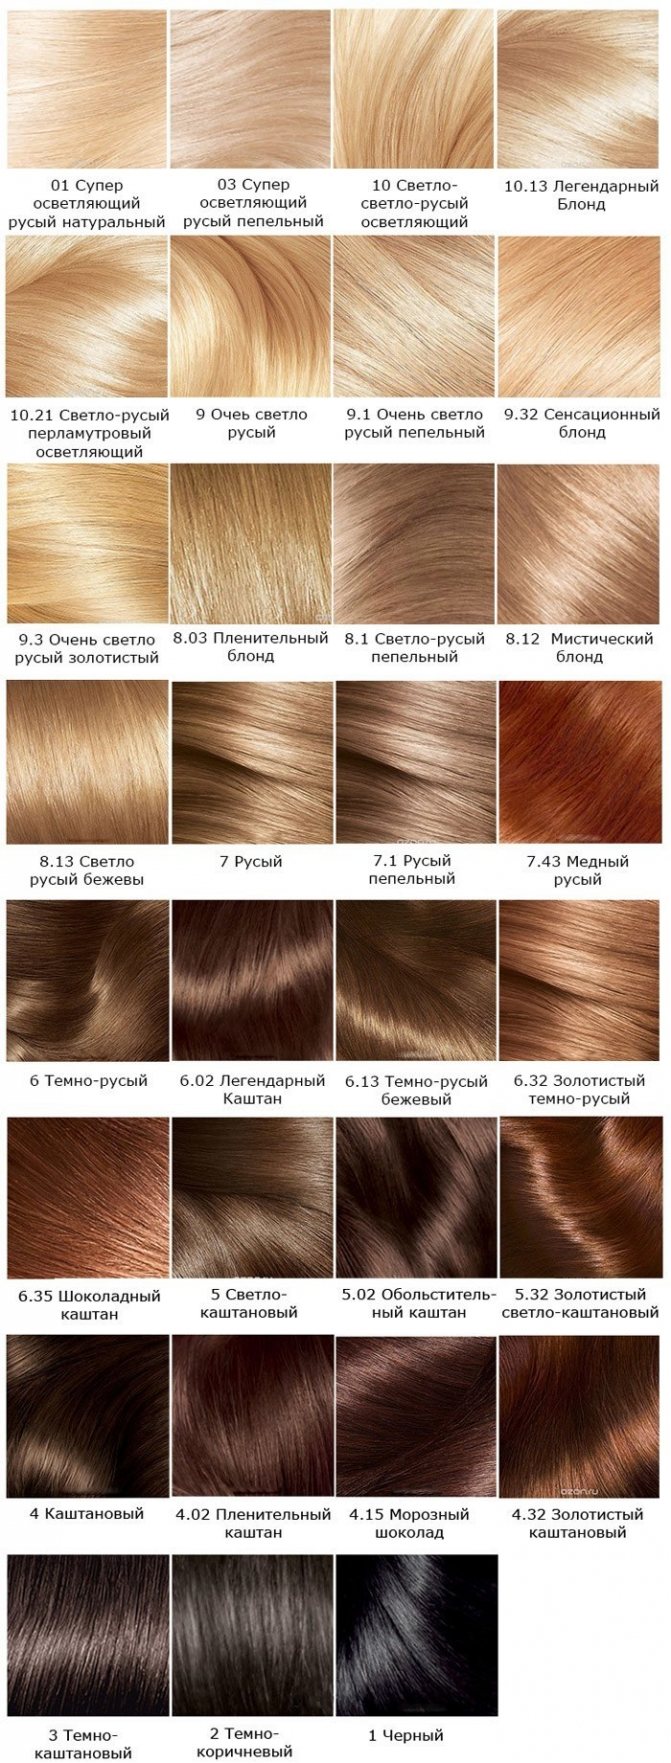 Краска для волос Лореаль Экселанс. Палитра цветов, фото, подбор оттенка, инструкция окрашивания